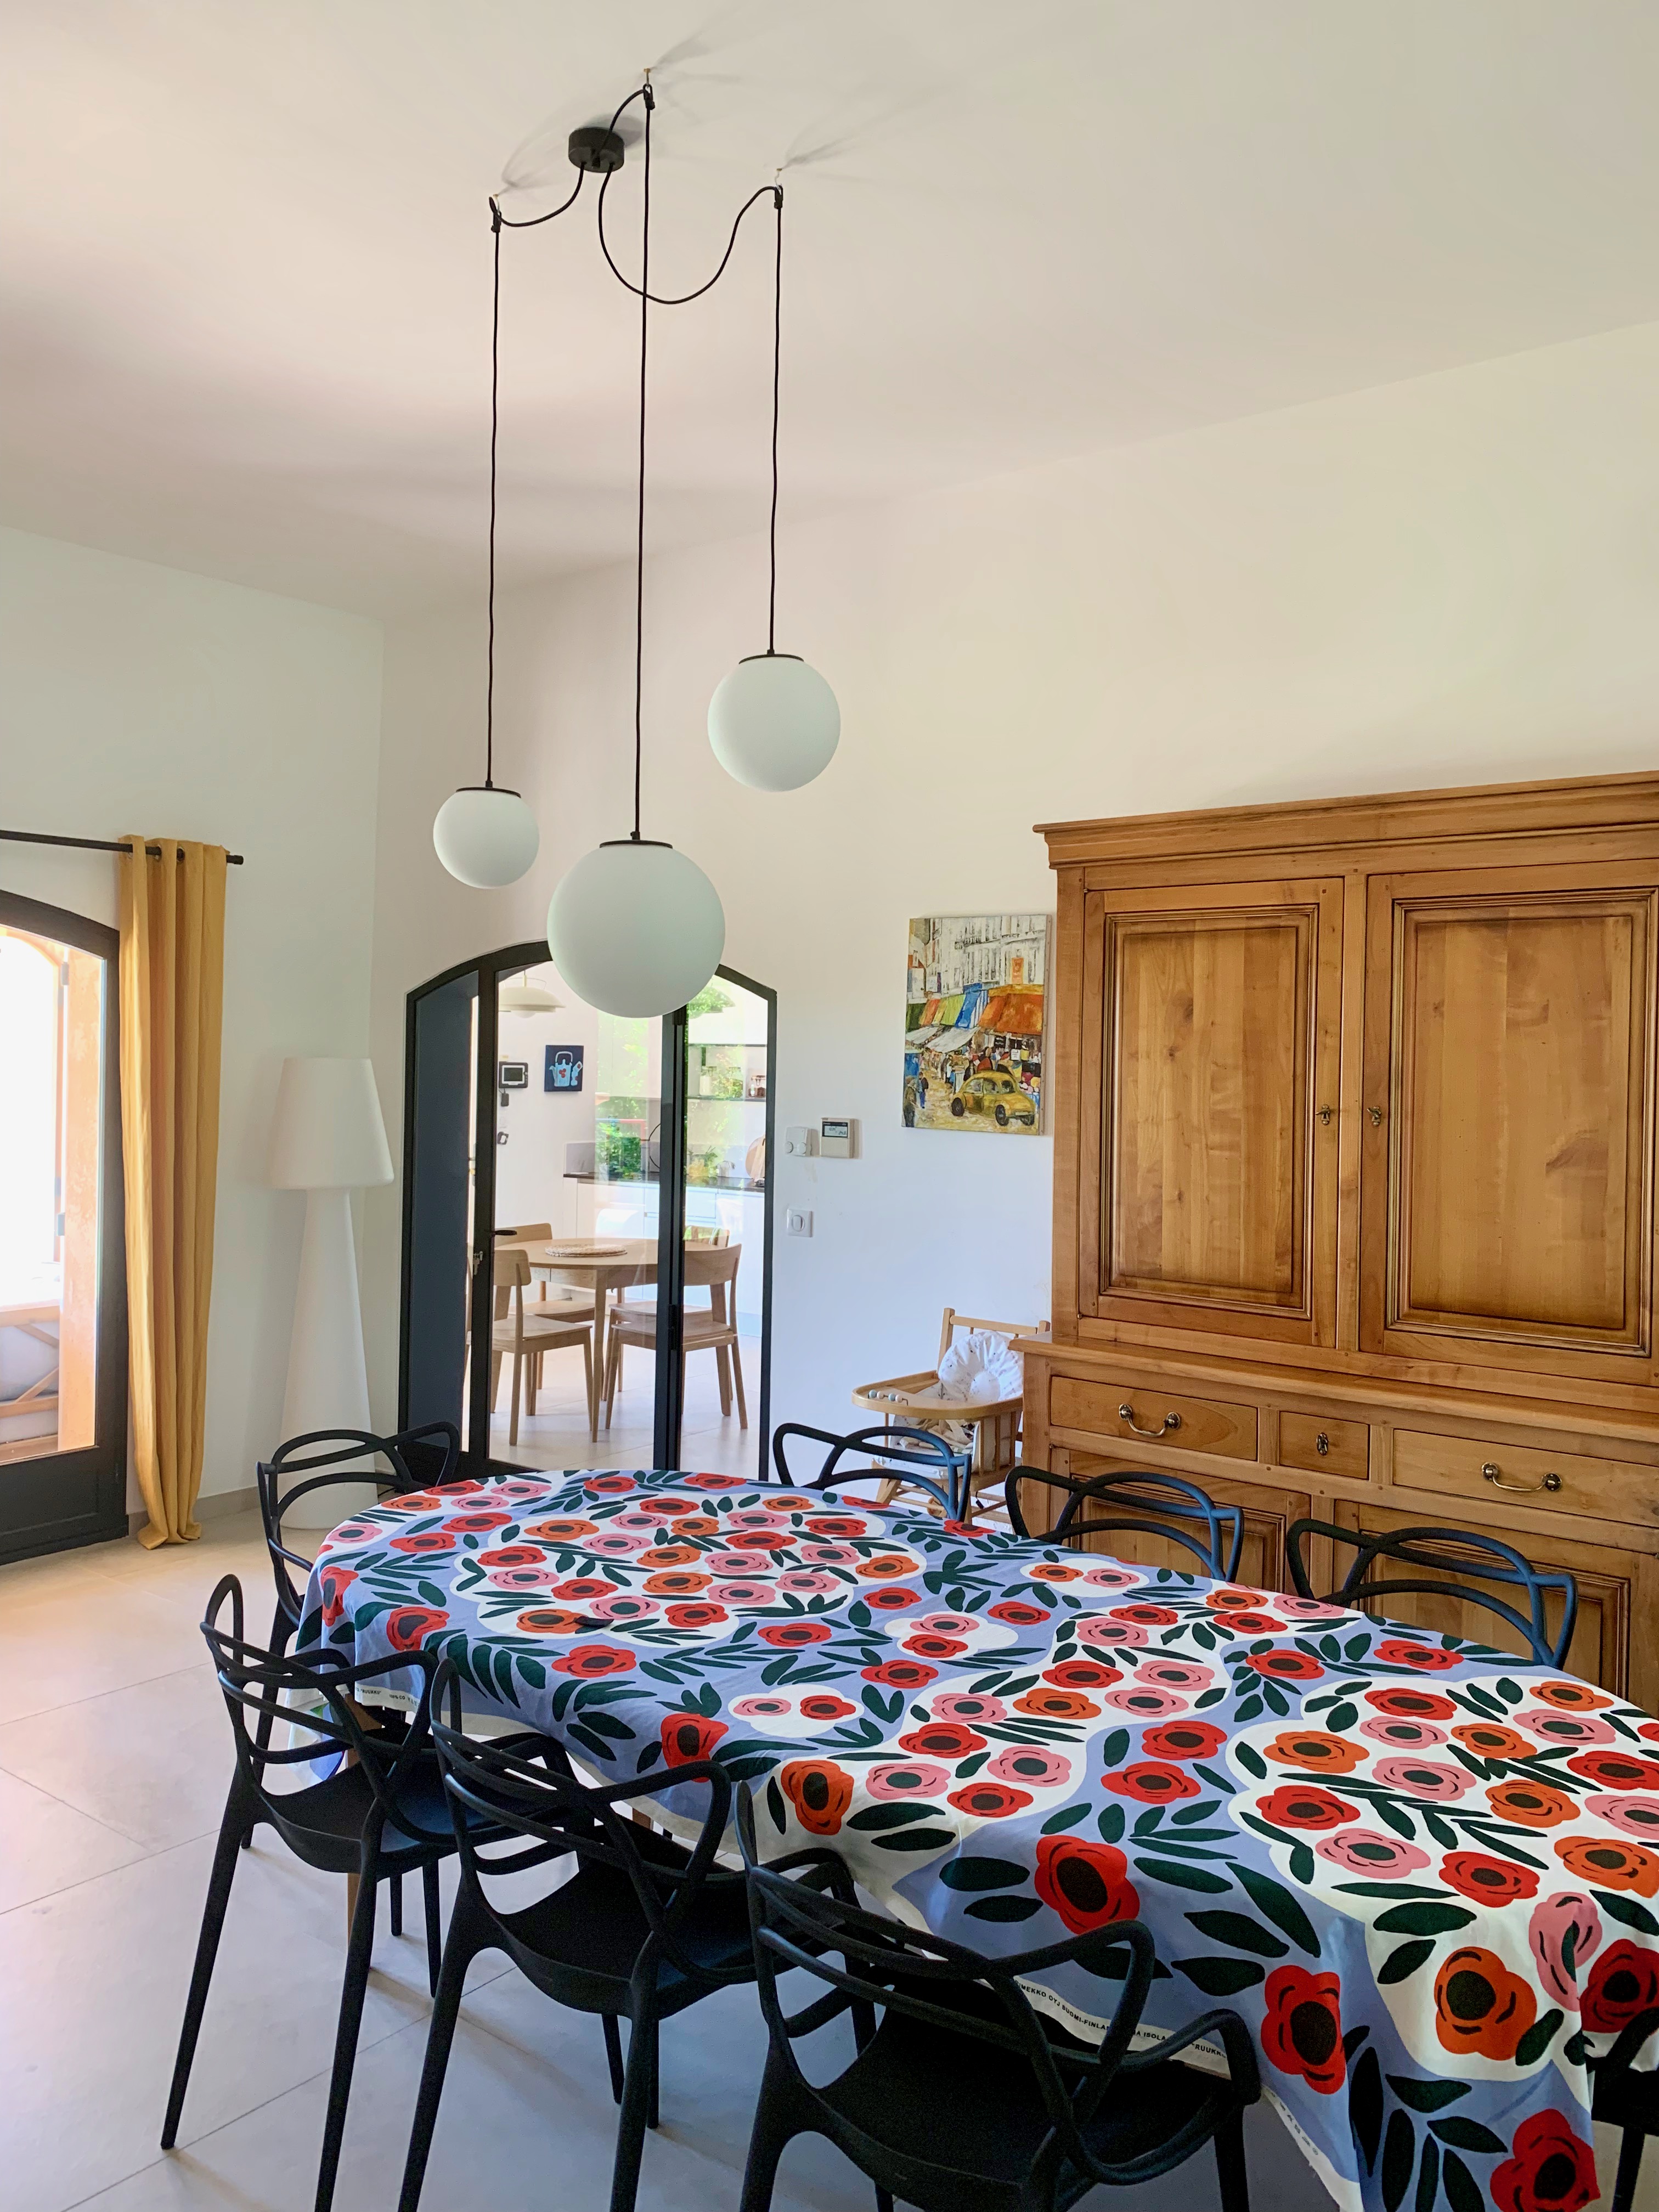 décoration salle à manger, salle à manger familiale, nappe marimekko, suspension cool republic, chaises kartell, meubles de famille